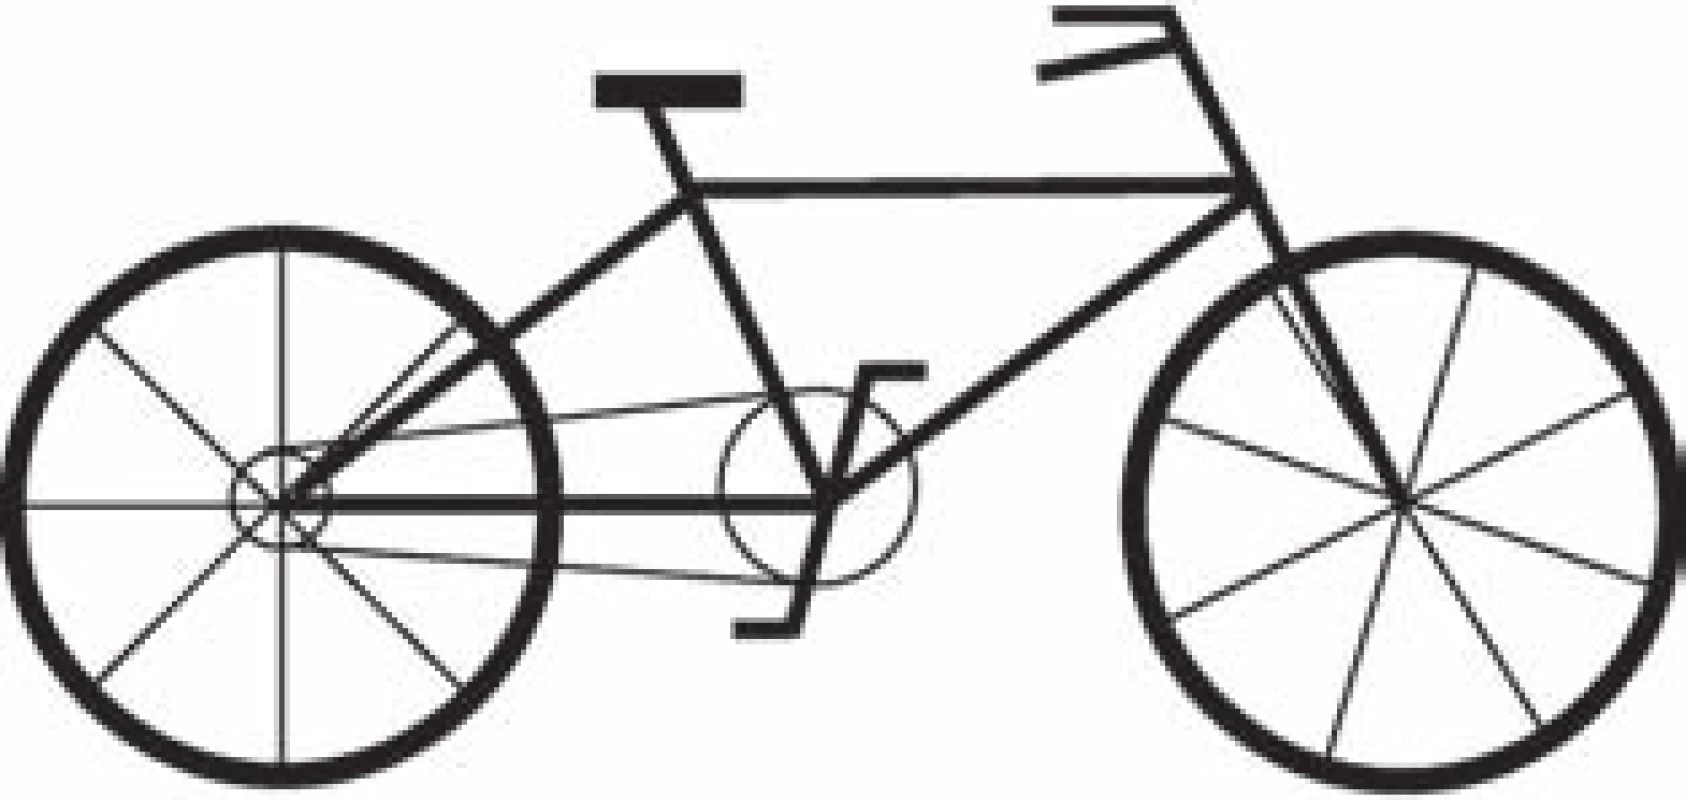 Kresba jízdního kola hodnocená plným počtem bodů v obou skórovacích systémech. Převzato z [13].
Fig. 1. A full-score bicycle drawing.